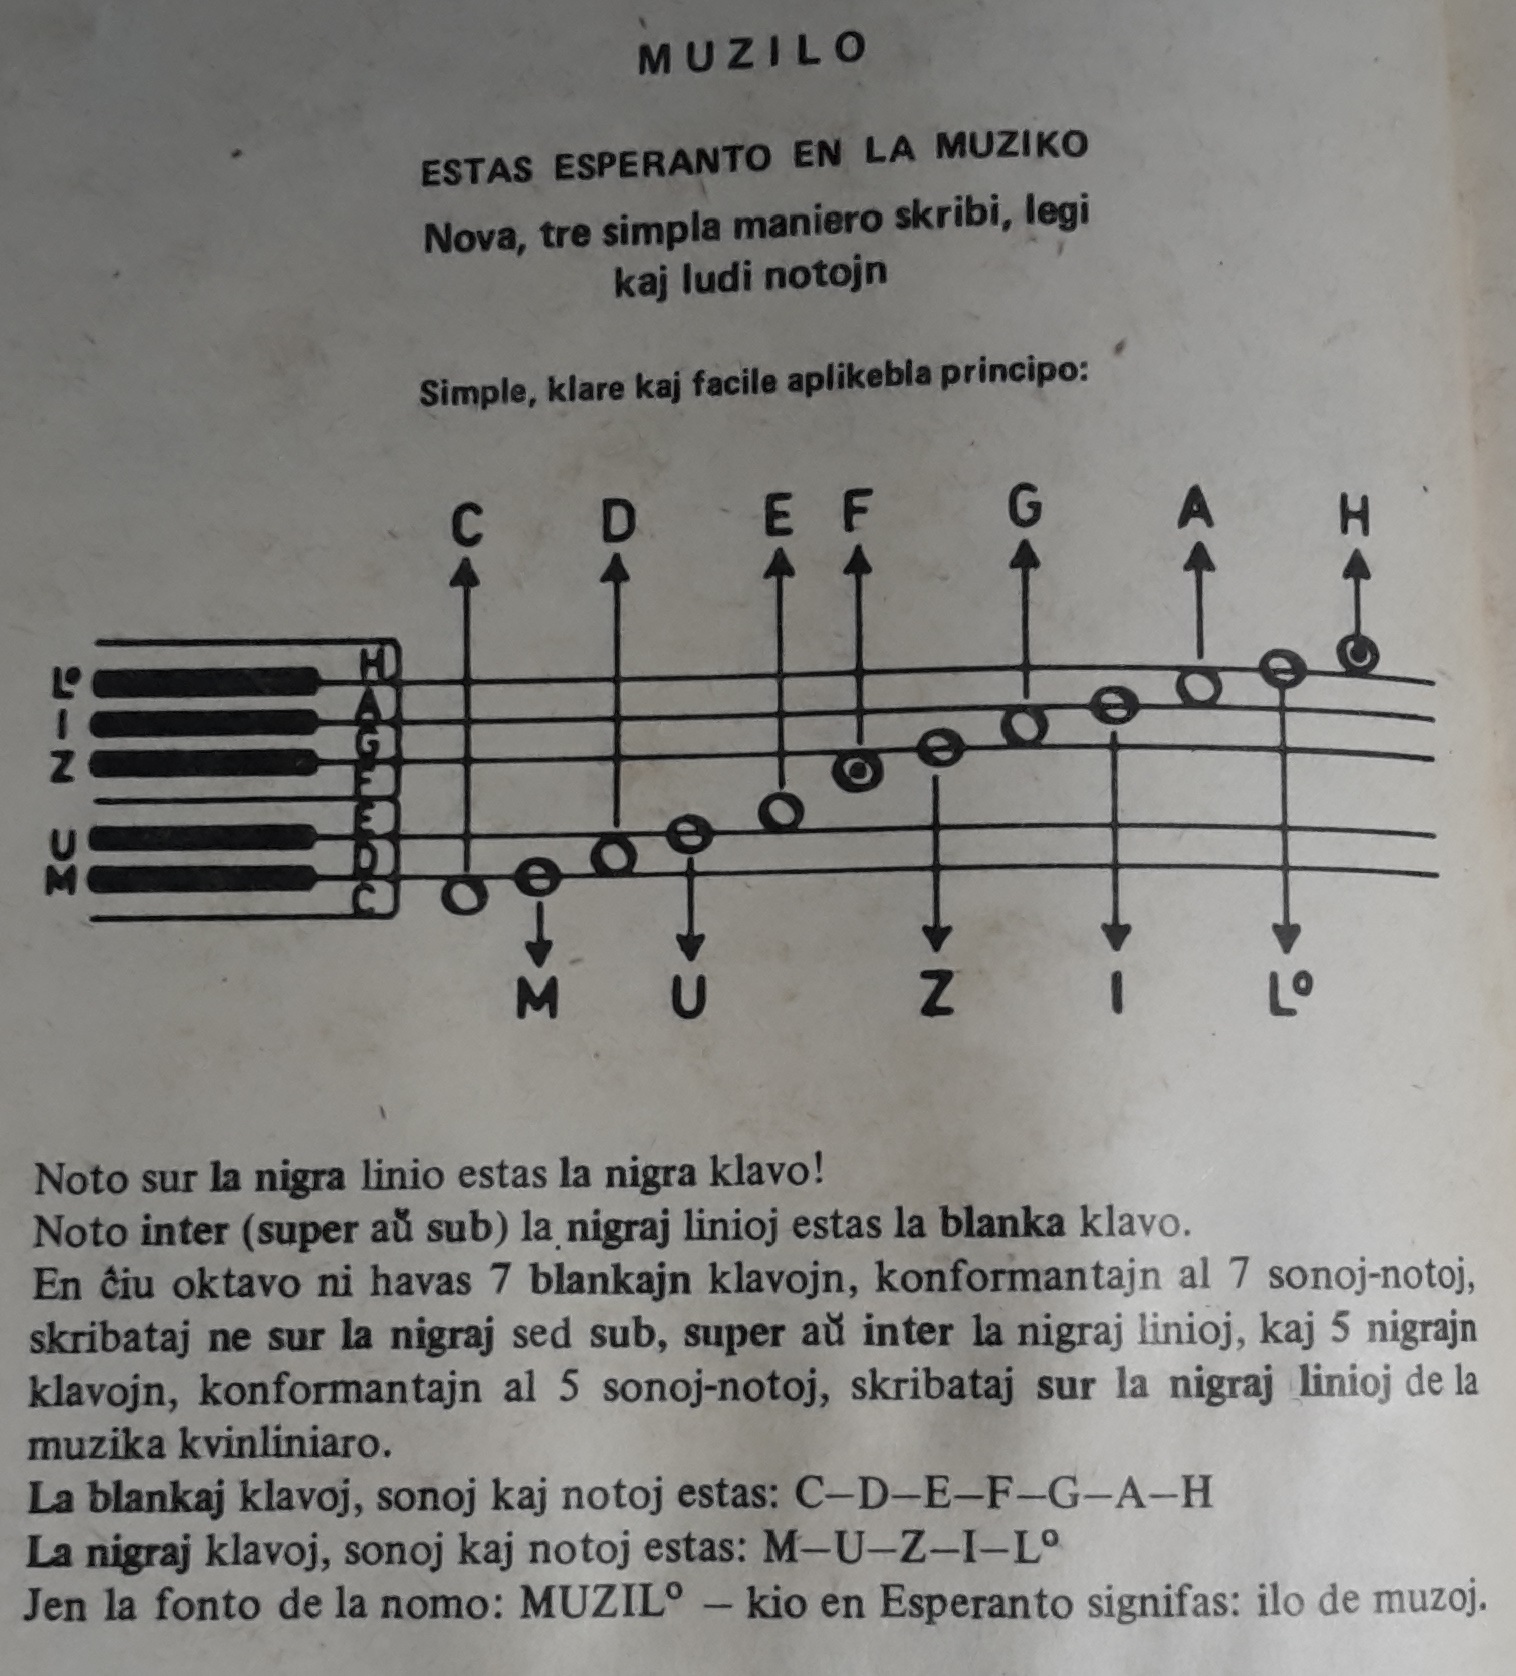 MUZILO estas Esperanto en la muziko